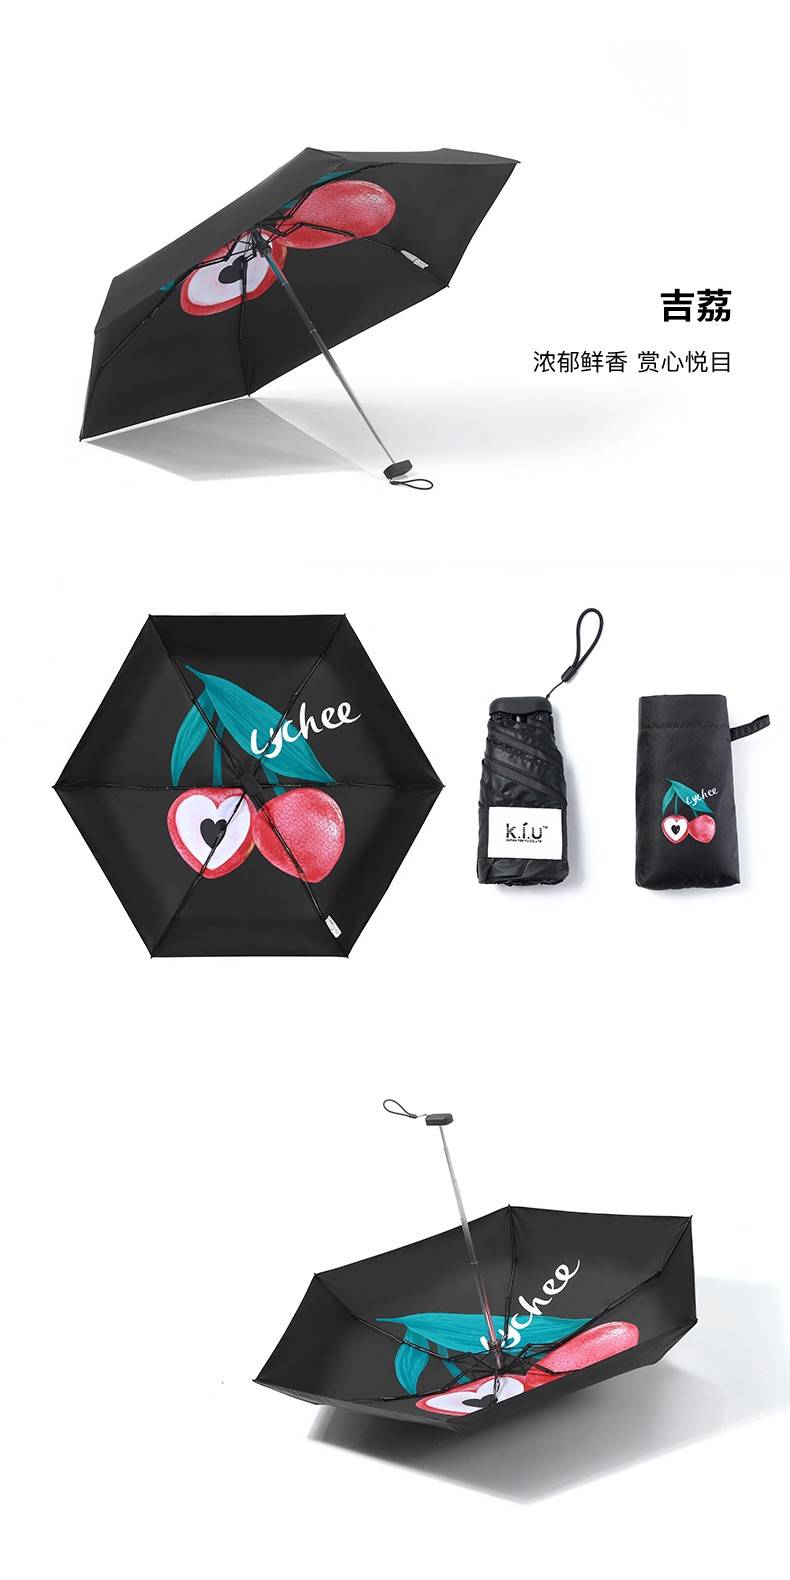 【全国包邮】明星同款，品牌直供！65元抢159元『K.I.U』六折防晒伞；BANANA xKiu 联合日本原创设计！